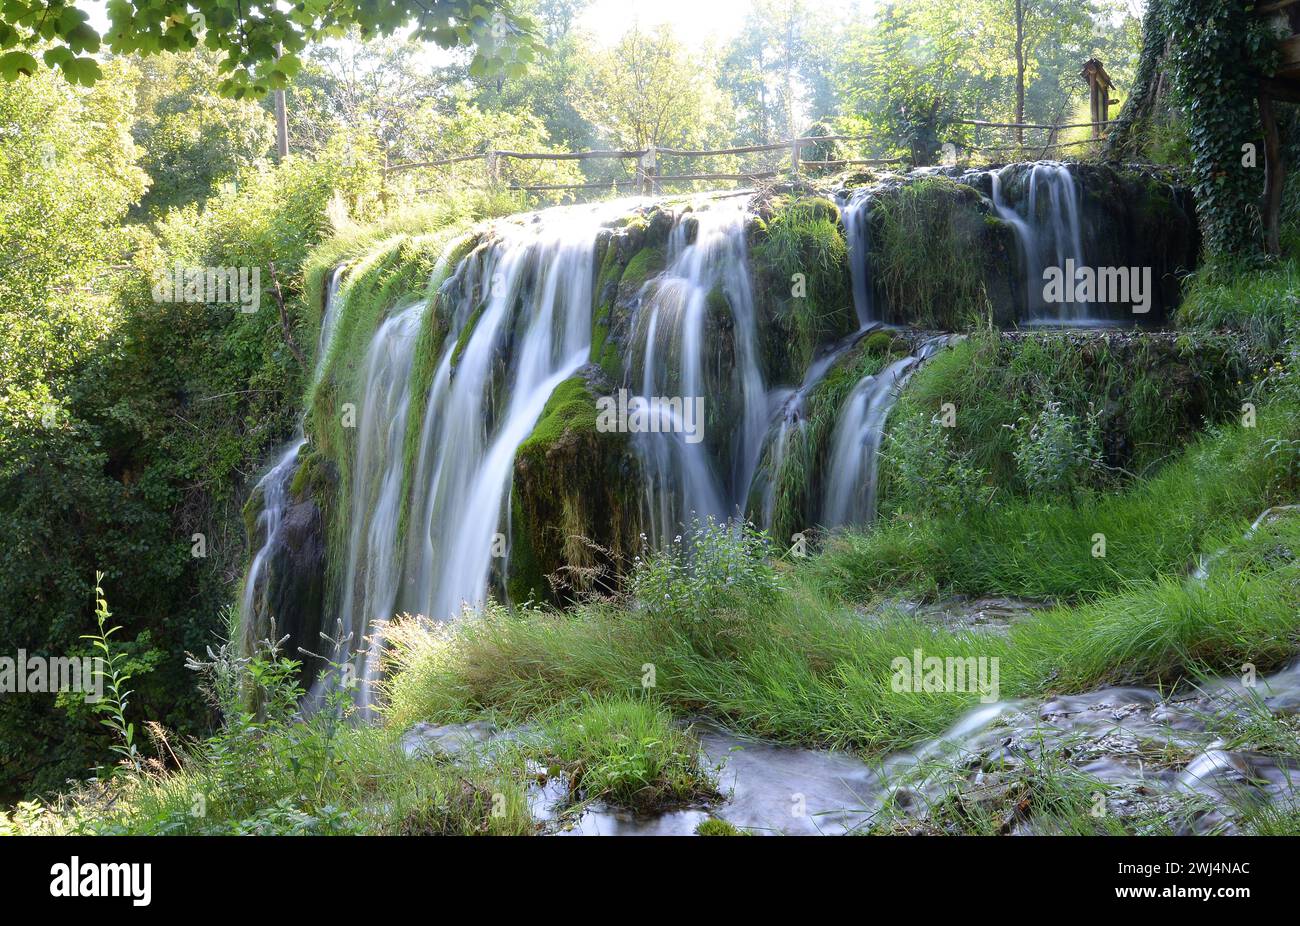 Waterfall near Slunj, Croatia Stock Photo